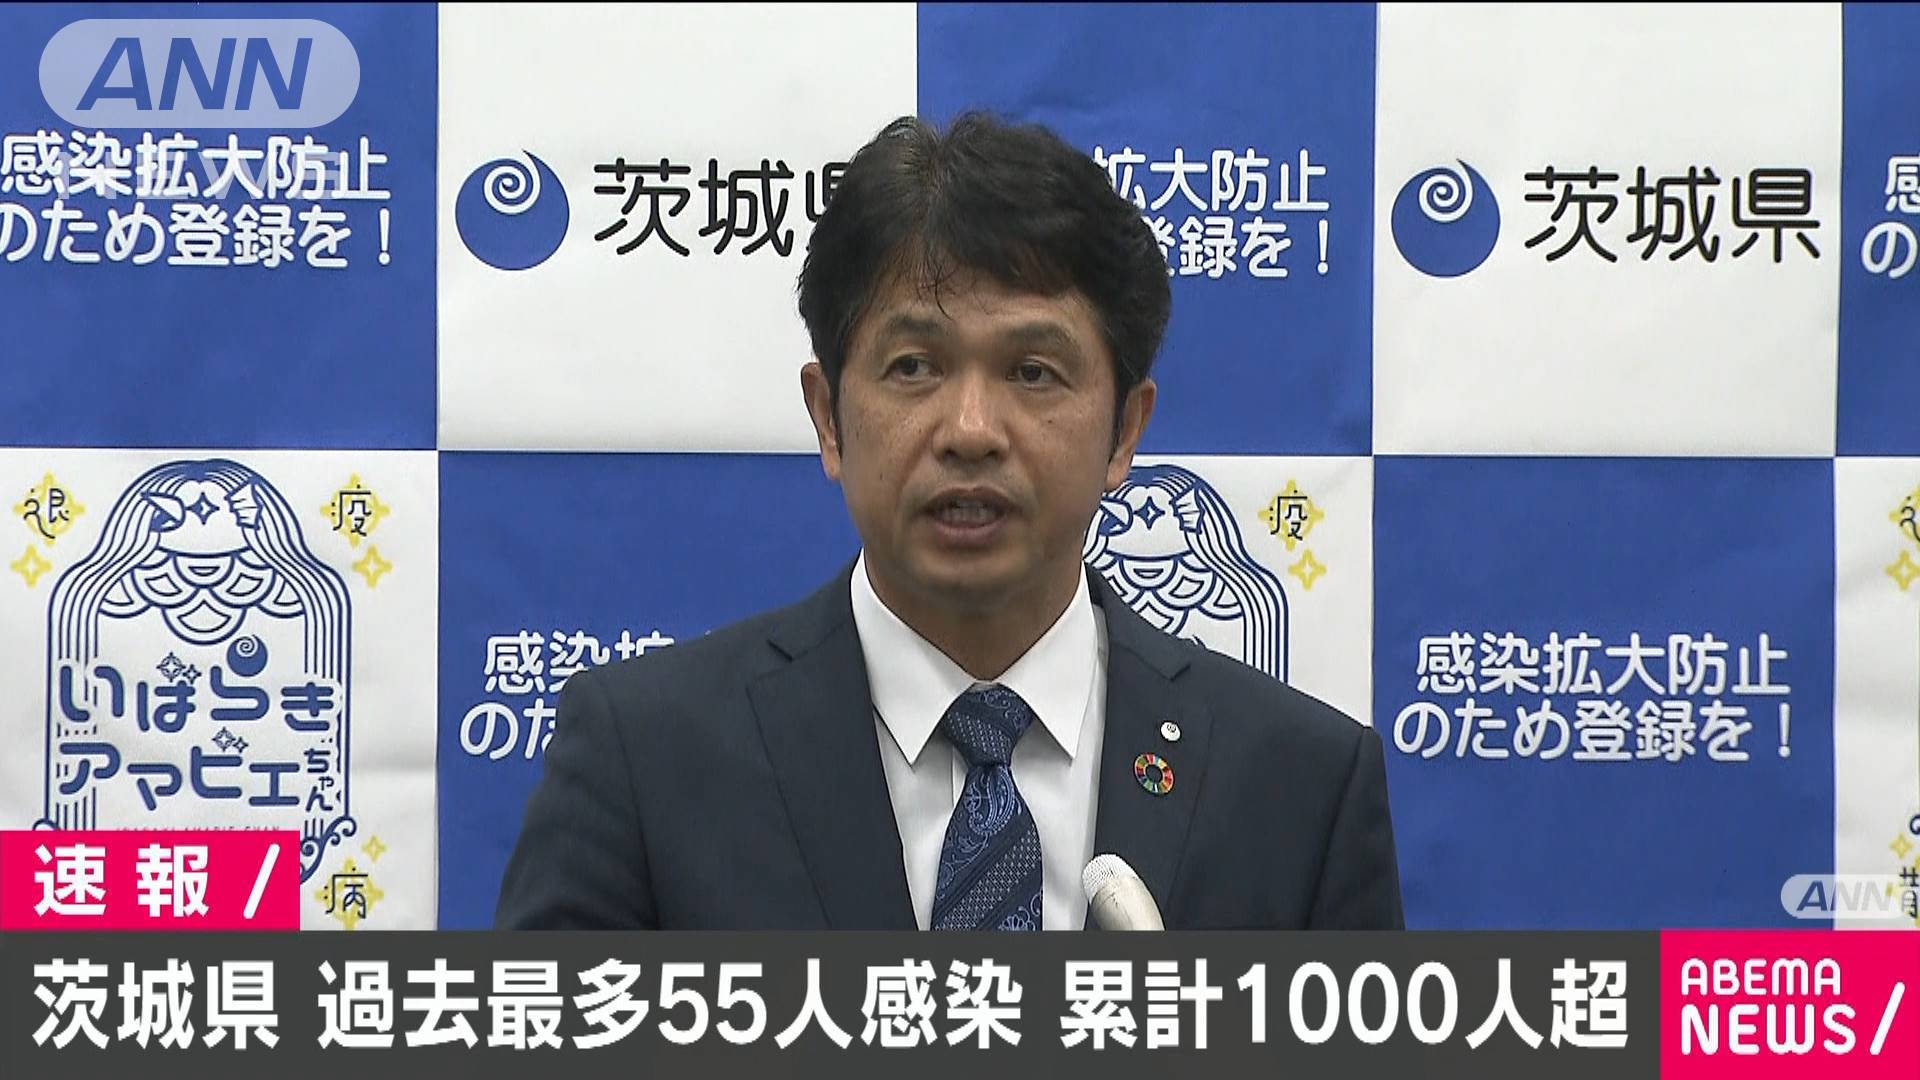 茨城県の感染者数が最多の55人更新 テレ朝news テレビ朝日のニュースサイト